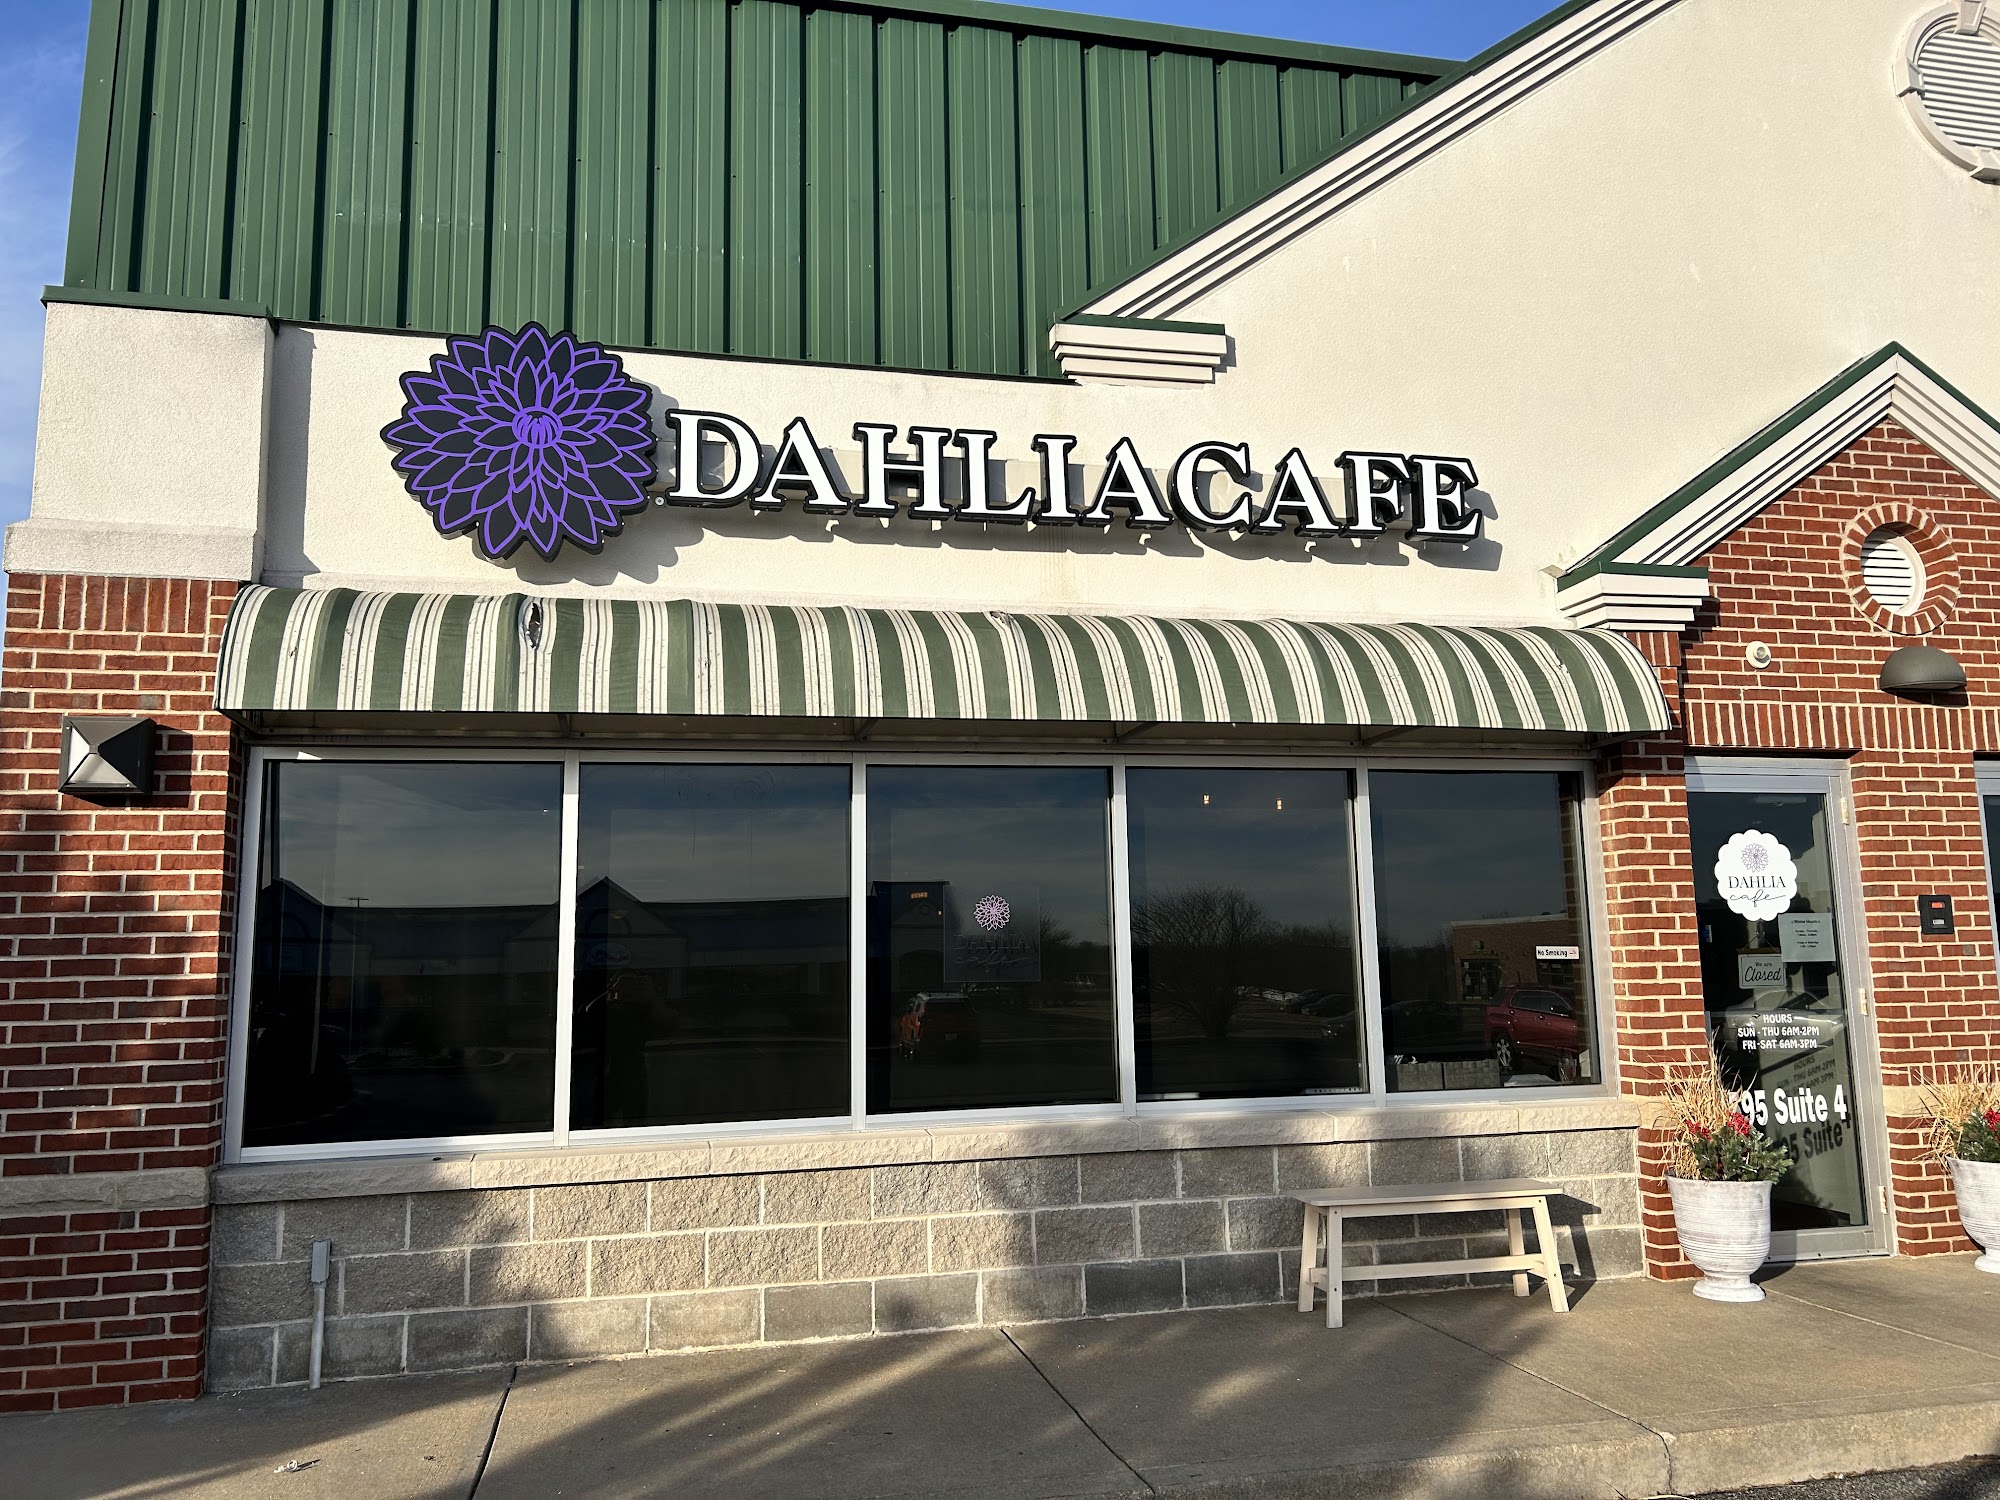 Dahlia Cafe